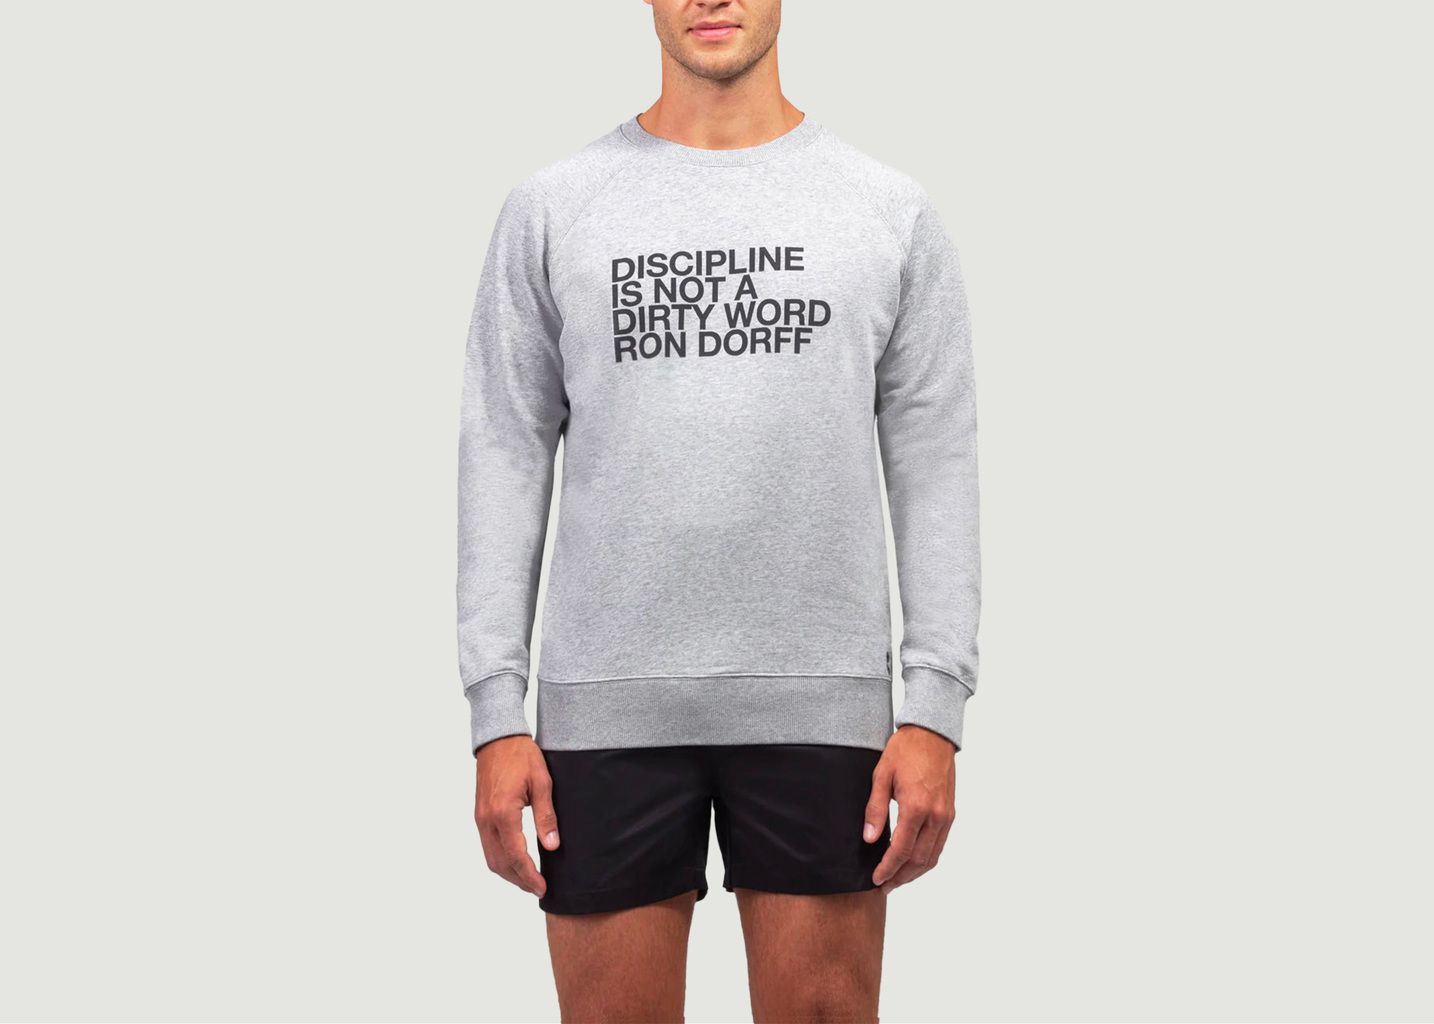 Ron Dorff Sweatshirt Discipline